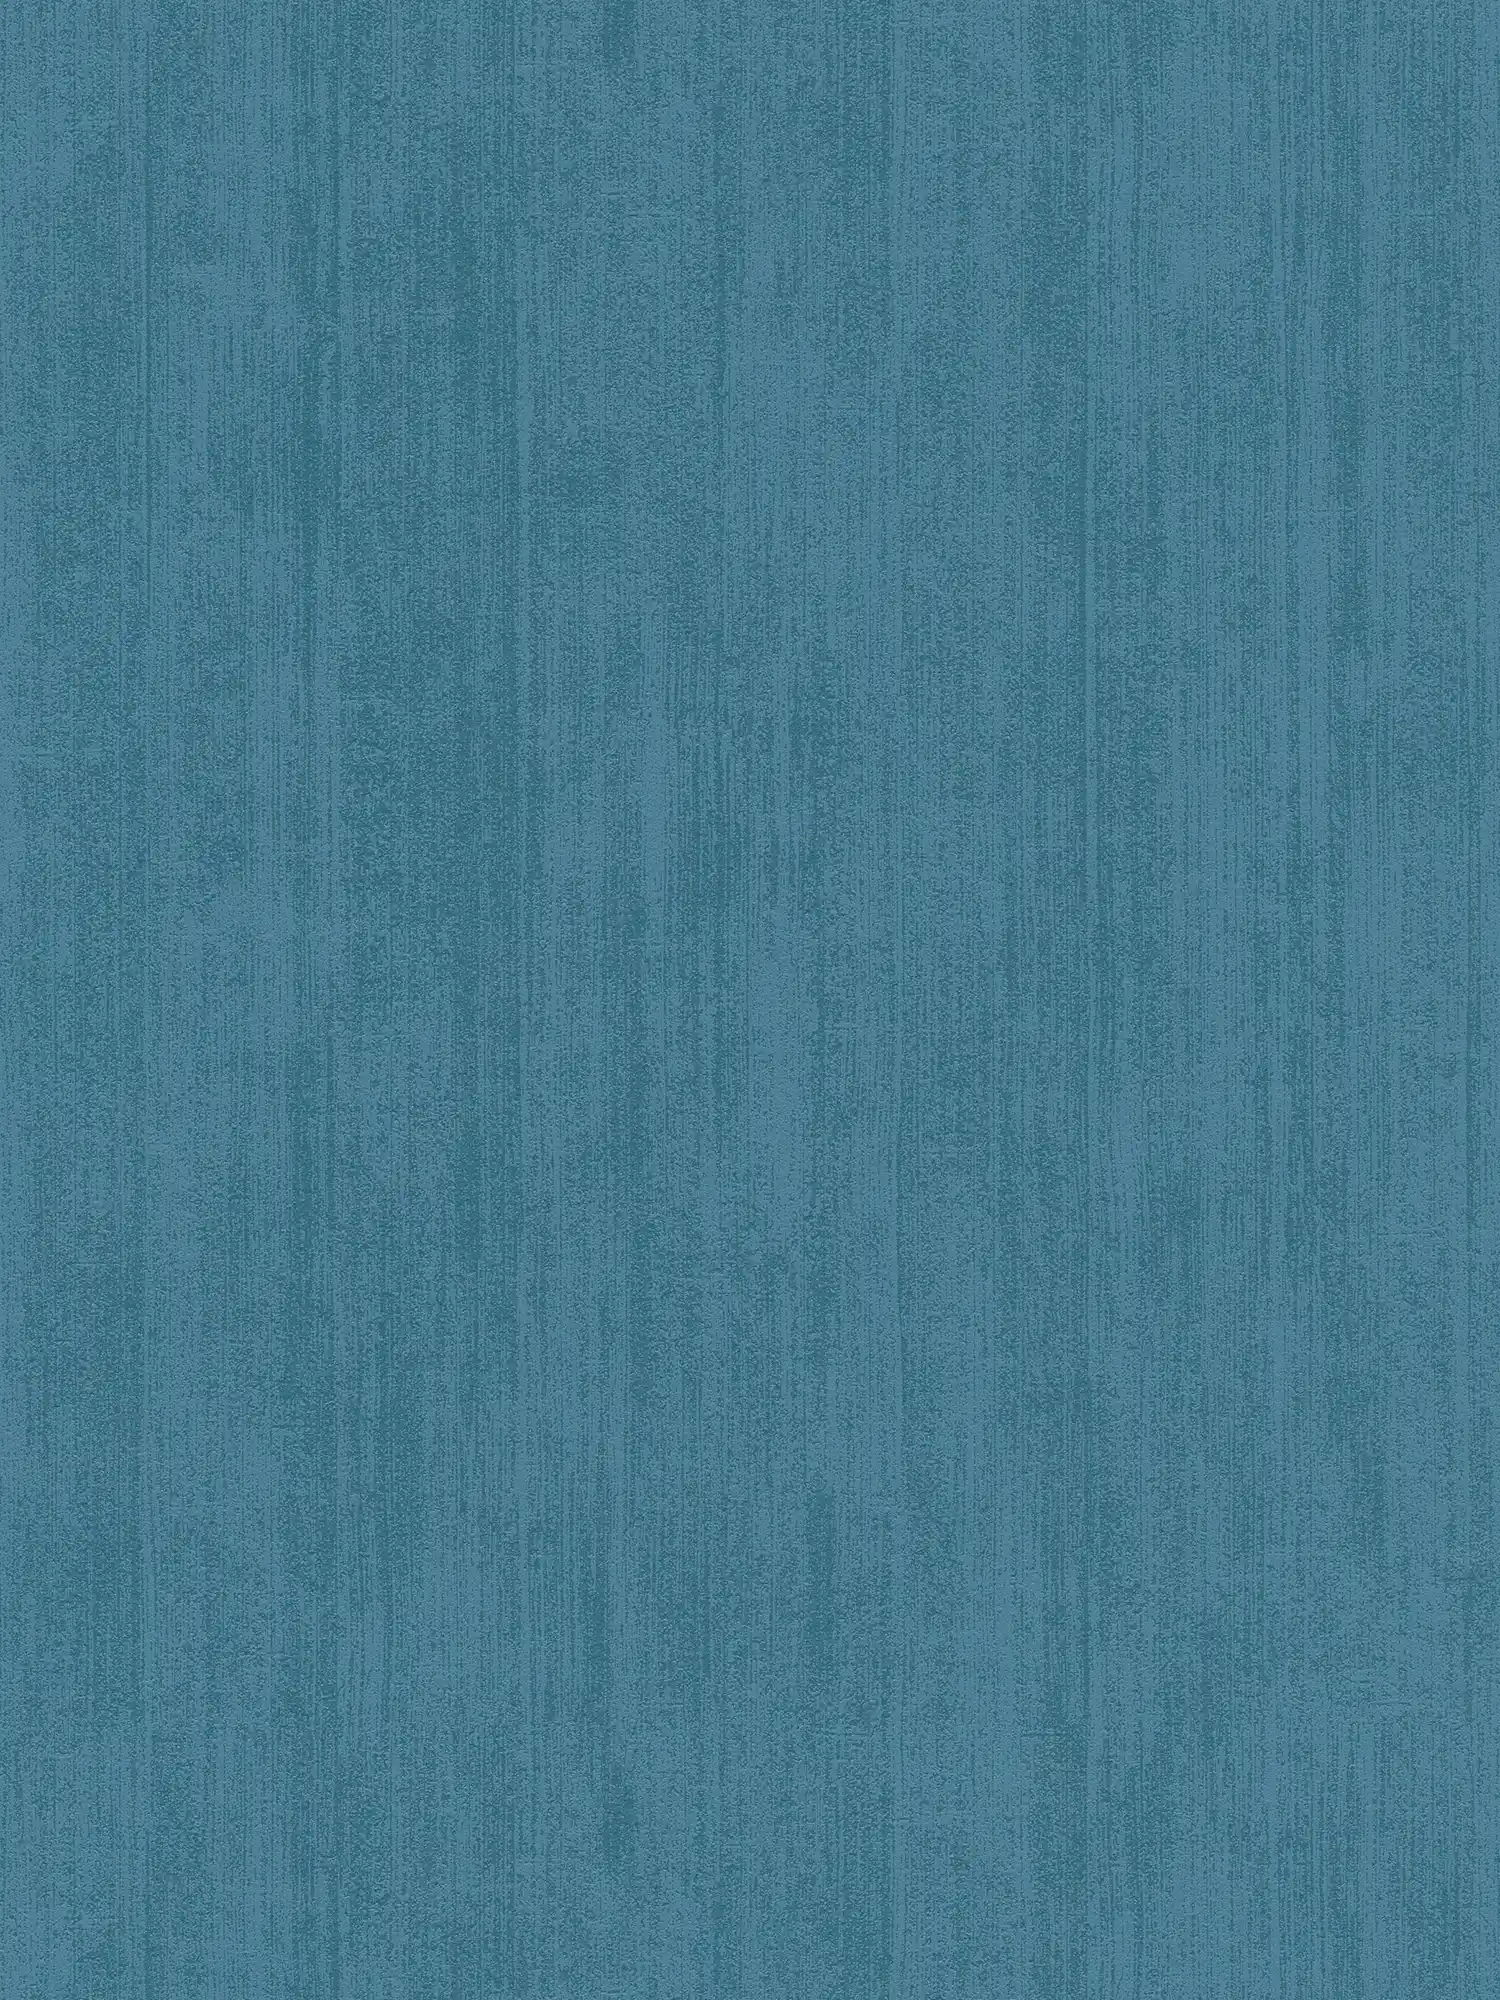 Papel pintado liso no tejido con sombreado tono sobre tono - azul
